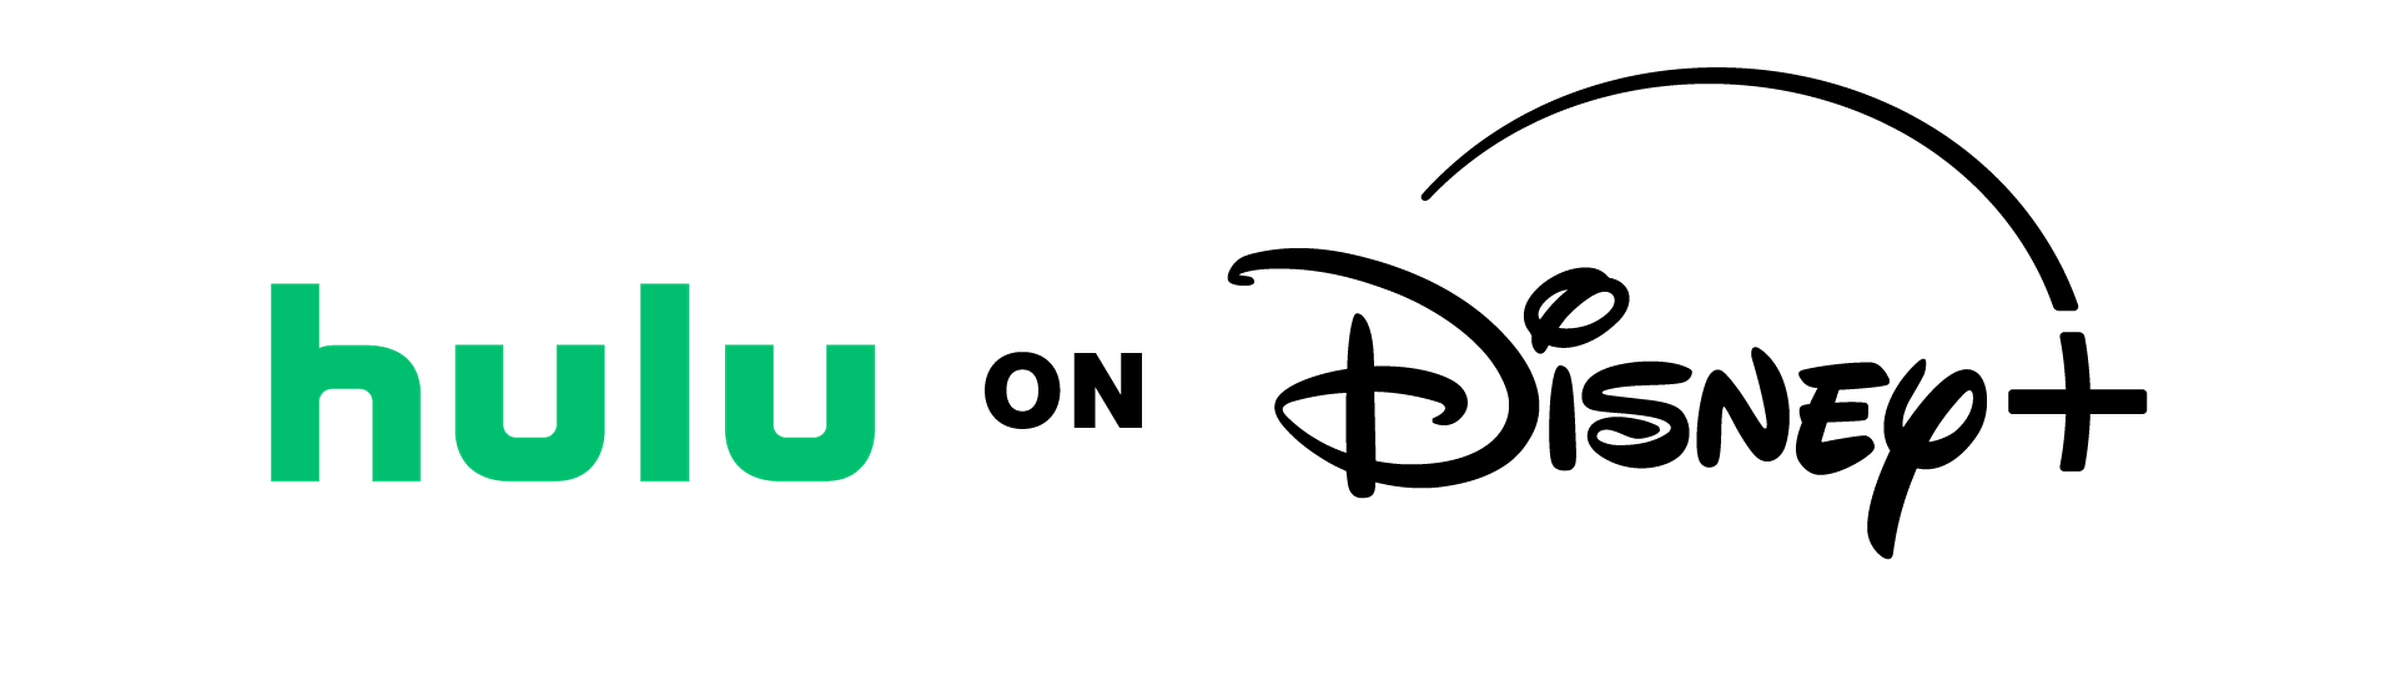 An image of the Hulu on Disney Plus logo.